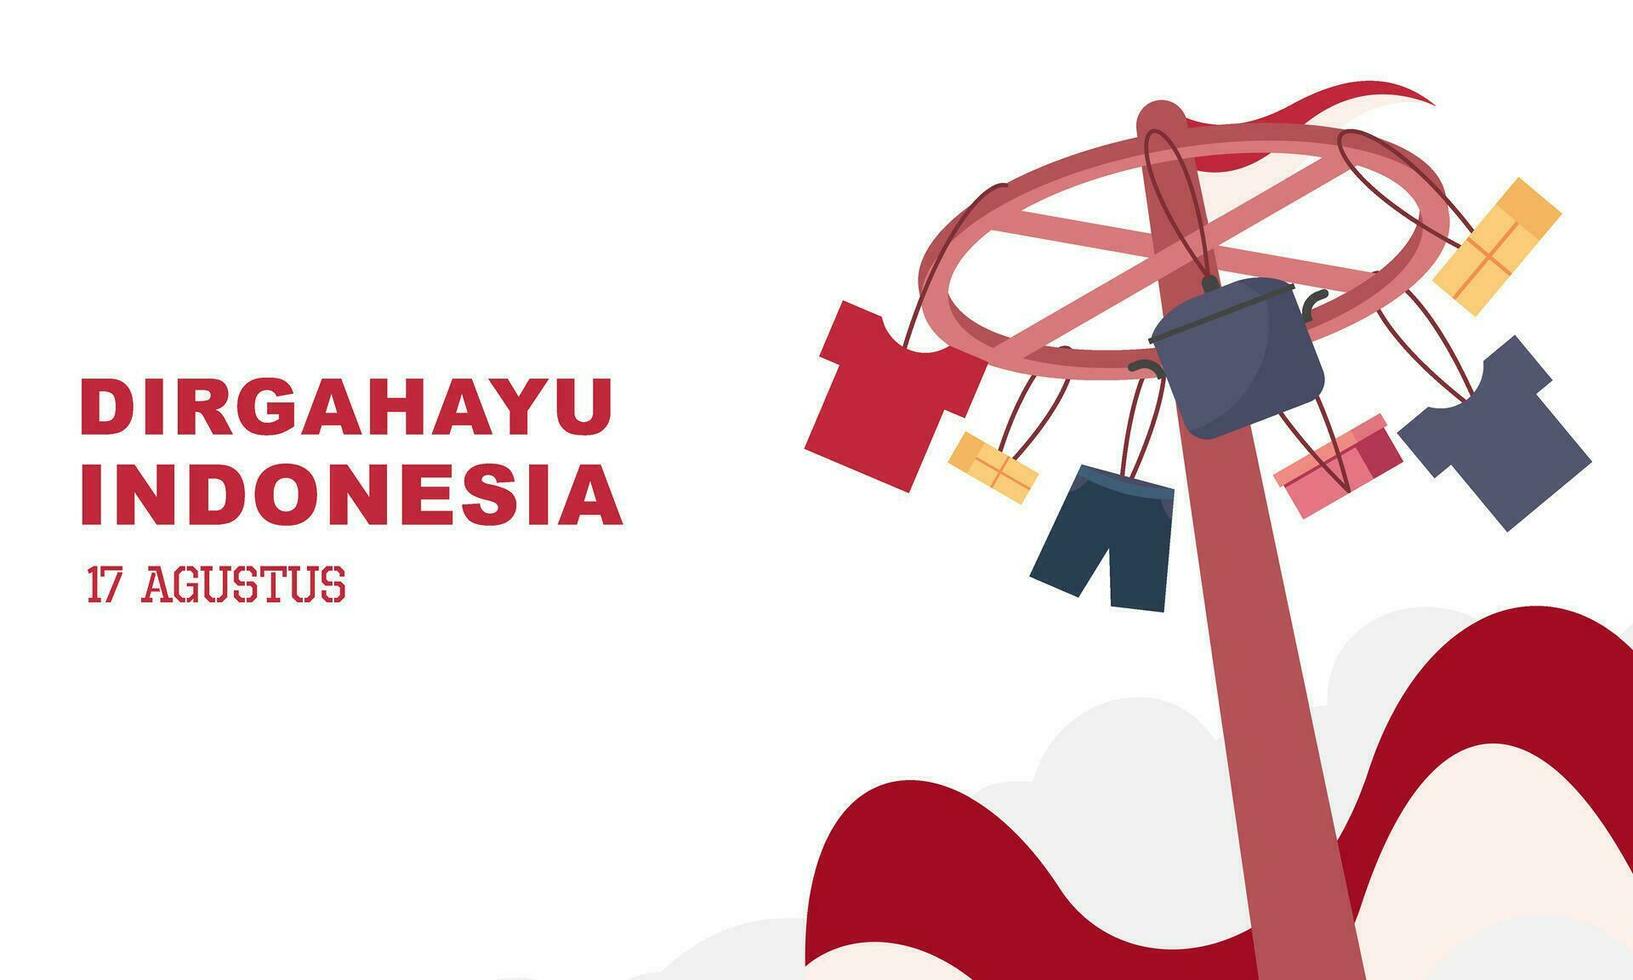 Indonesien Unabhängigkeit Tag 17 August mit traditionell Spiele Konzept Illustration vektor